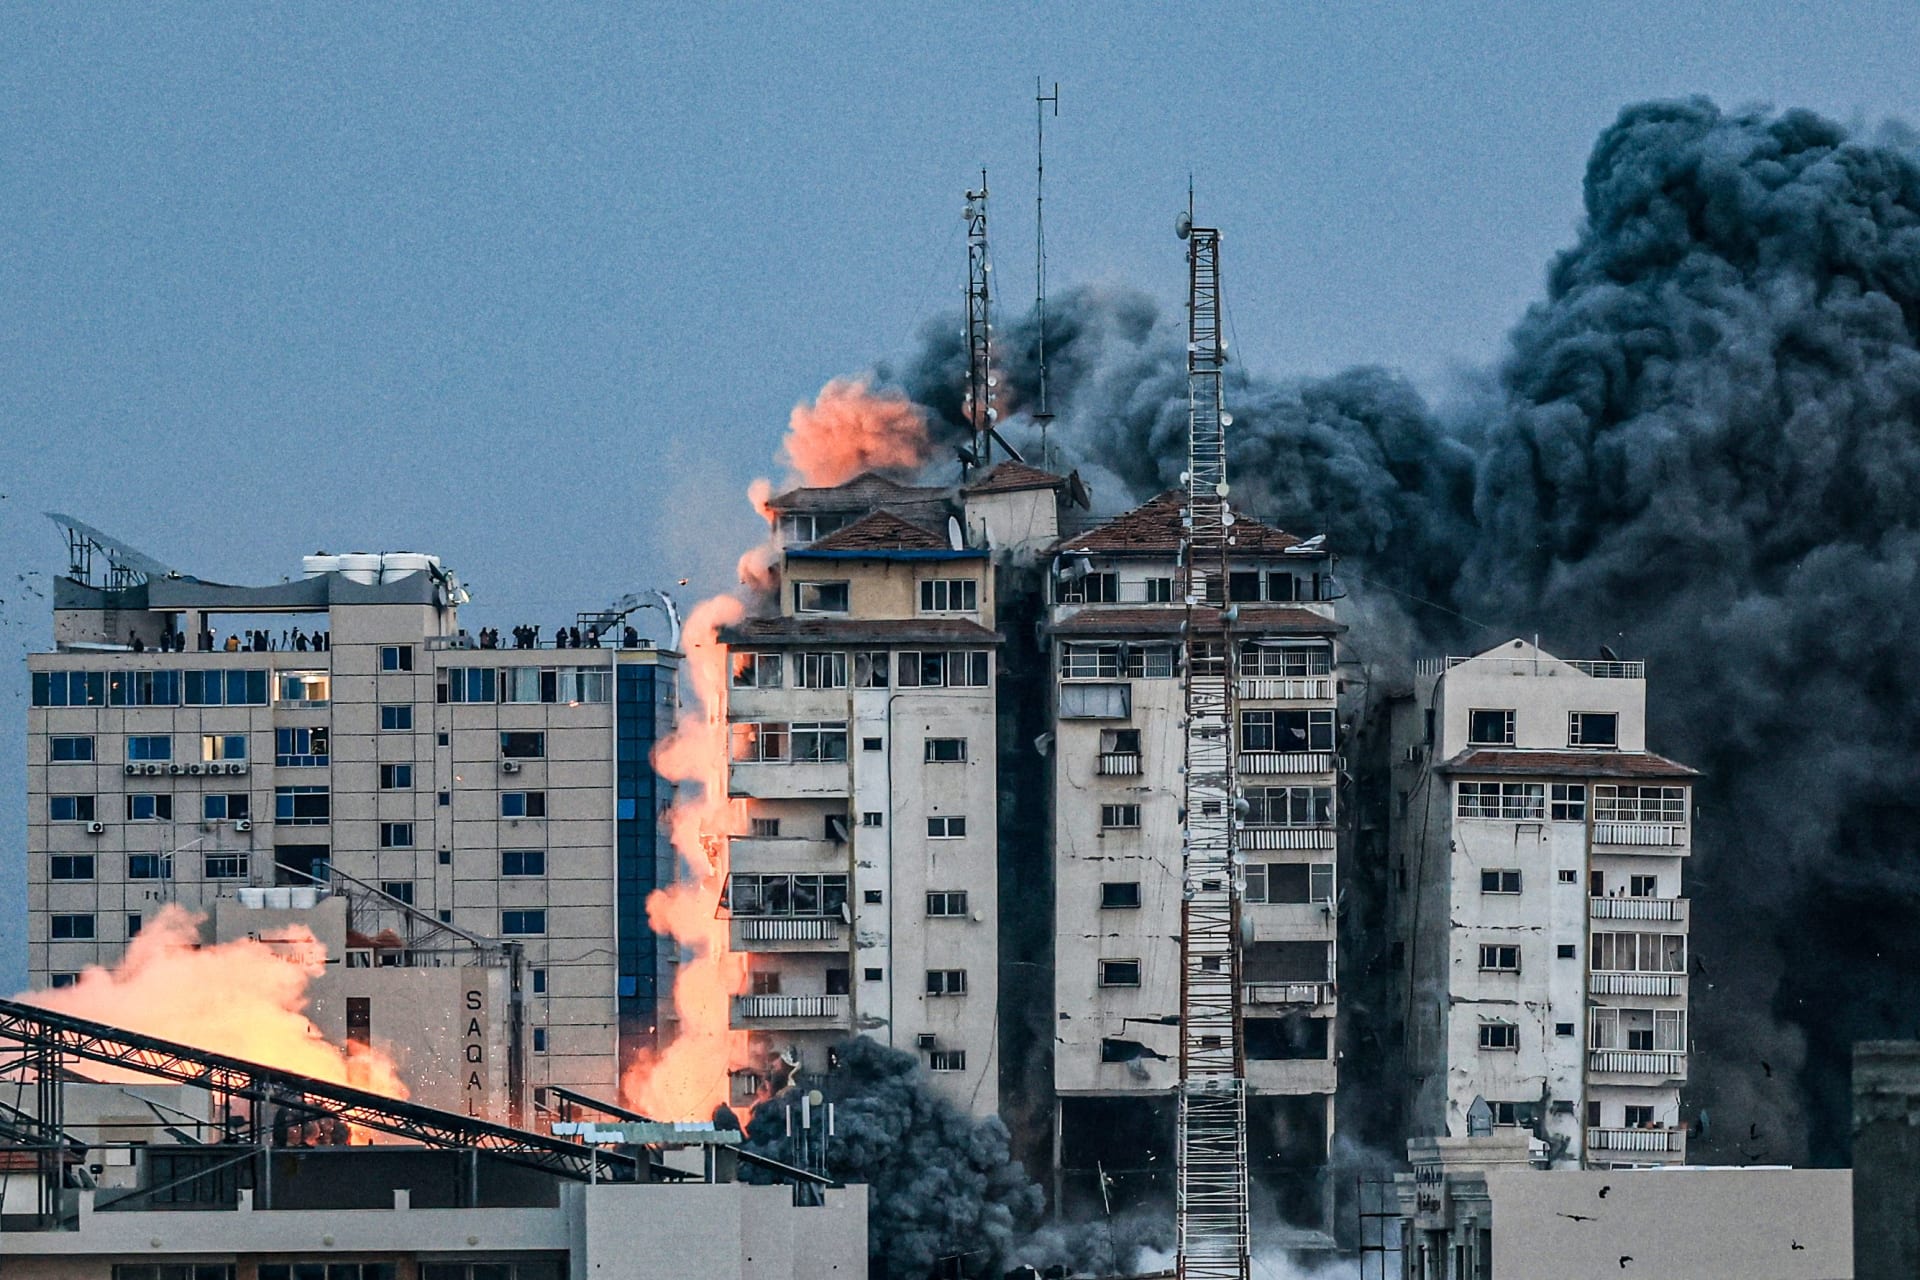 أشخاص يقفون على سطح مبنى بينما تتصاعد كرة من النار والدخان فوق برج فلسطين في مدينة غزة في 7 أكتوبر/ تشرين الأول 2023 أثناء غارة جوية إسرائيلية.